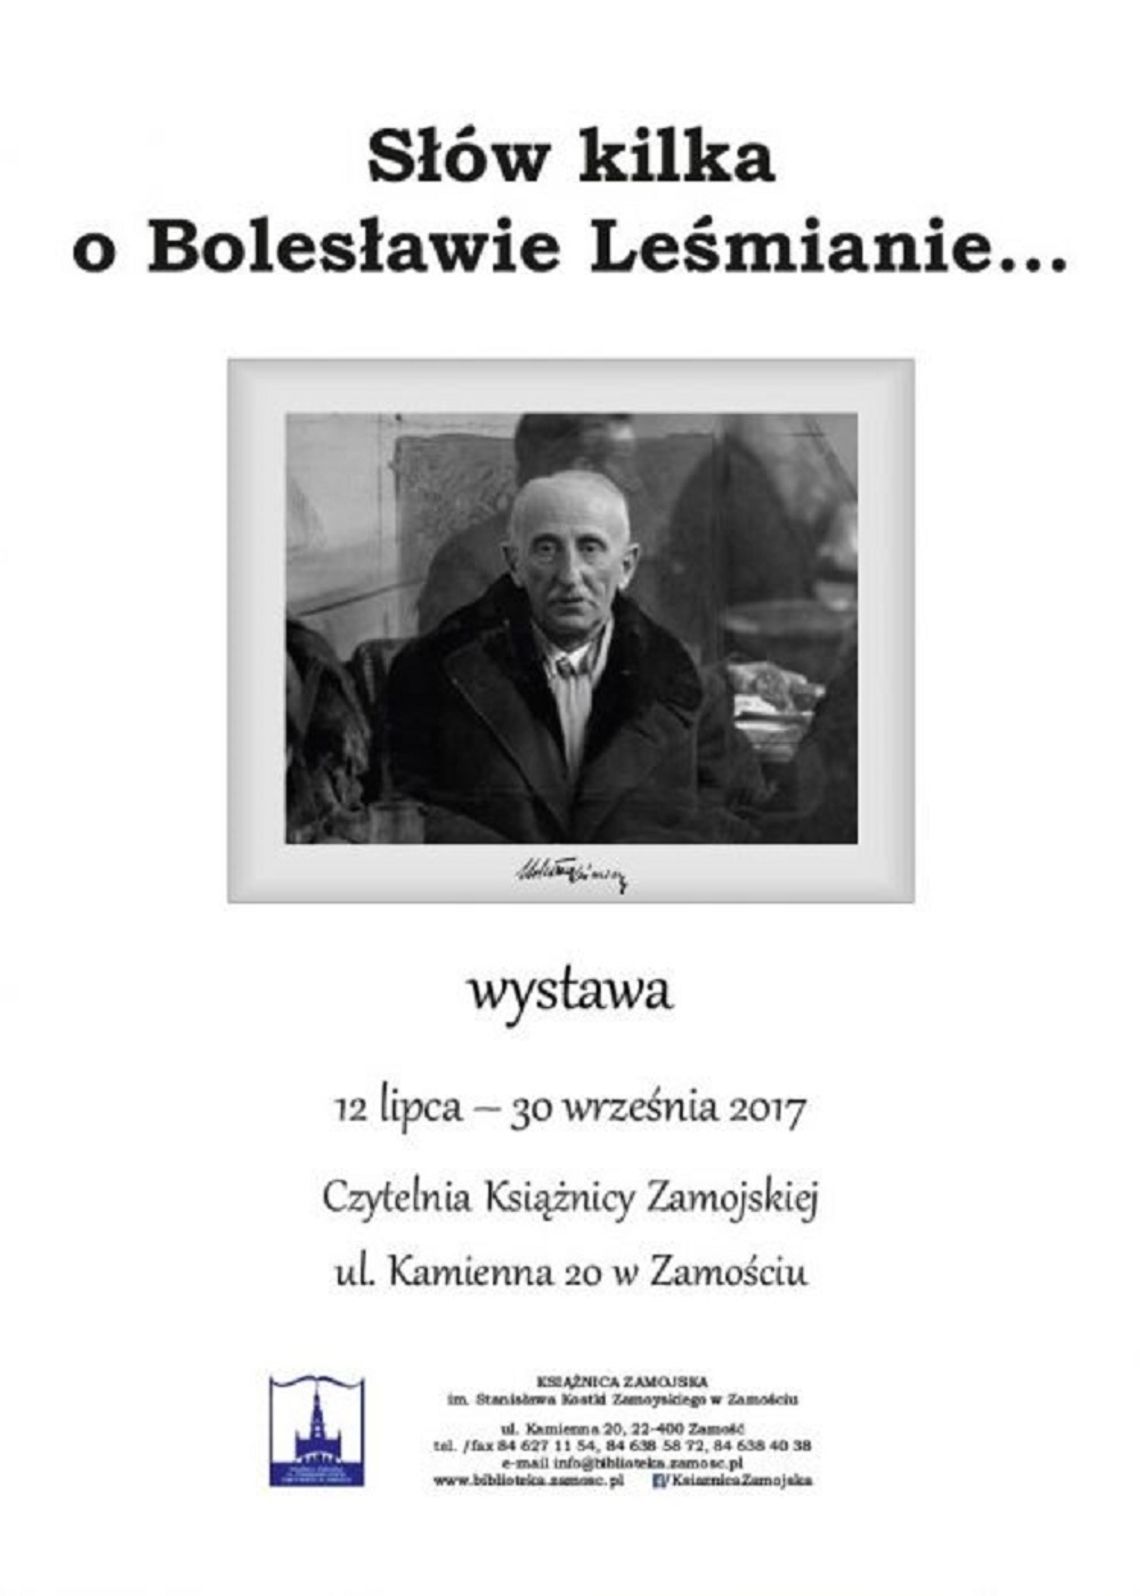 Zamość: Nowa wystawa w bibliotece - Słów kilka o Leśmianie